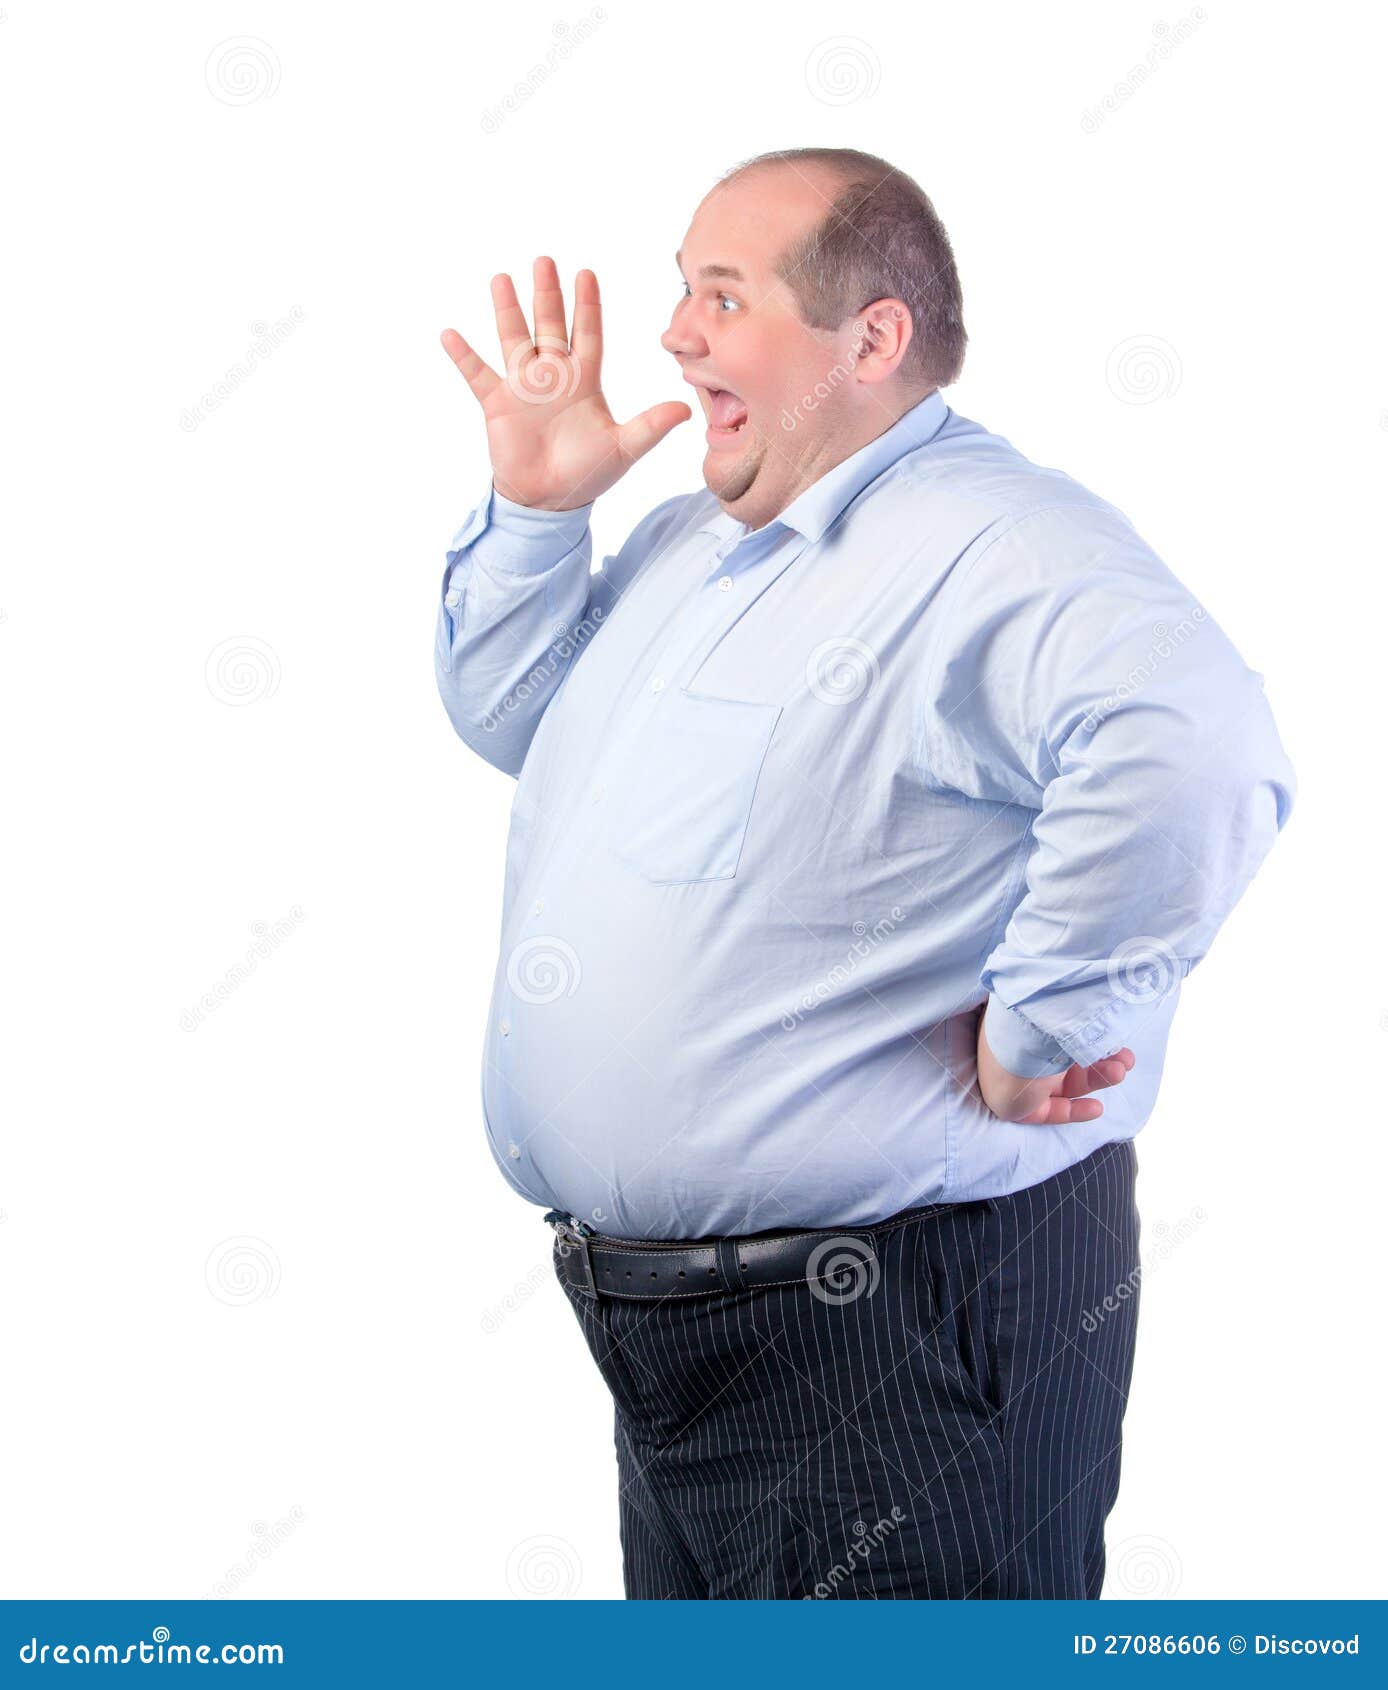 Толстый пожилых мужчин. Толстый мужчина в рубашке. Толстый мужик в рубашке. Полный человек в рубашке. Жирный мужчина в рубашке.